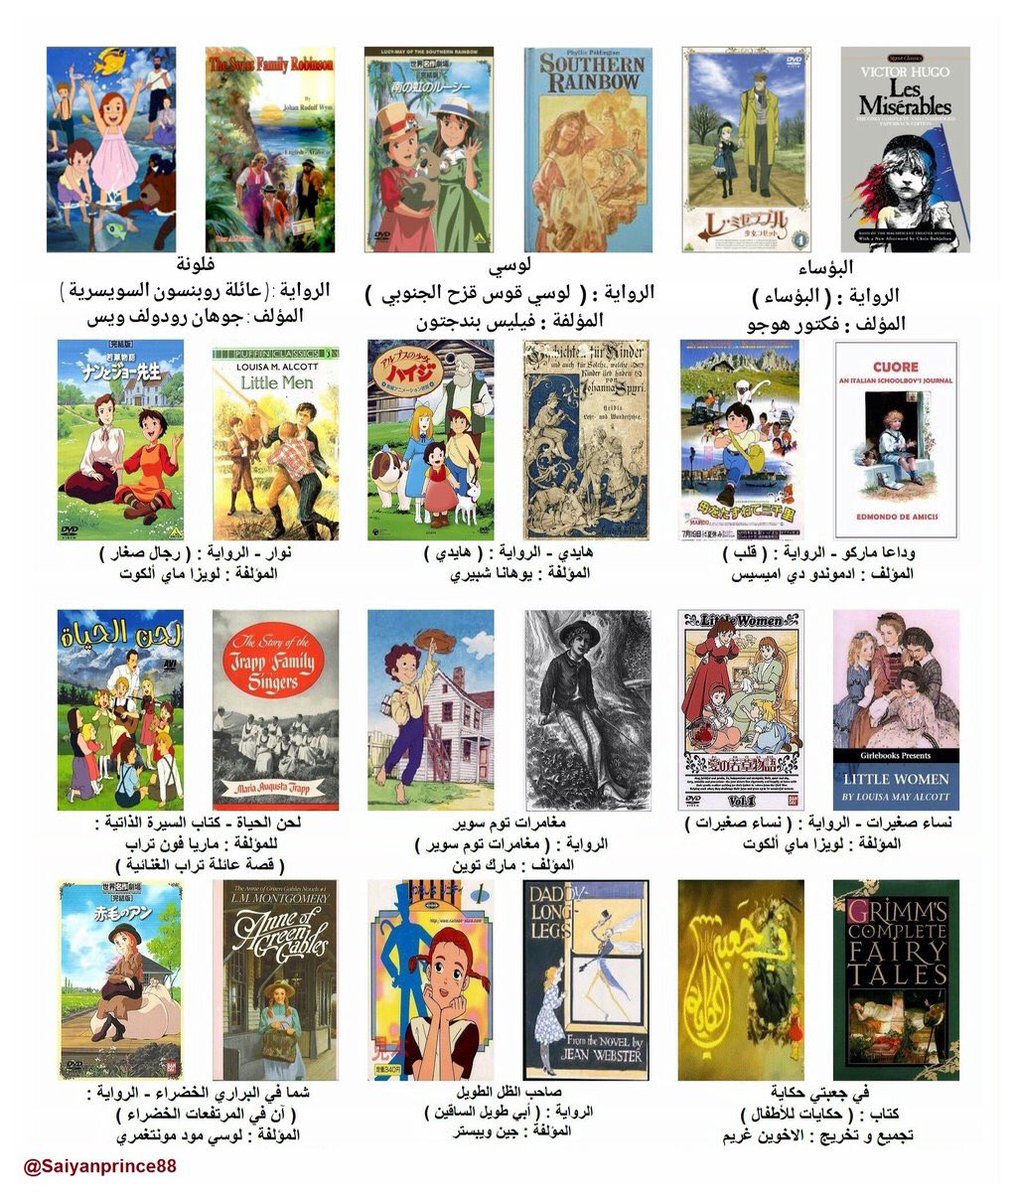 74 12 رسوم متحركة بالعربية , افلام جميلة لاطفال باللغة العربية فهر نضير